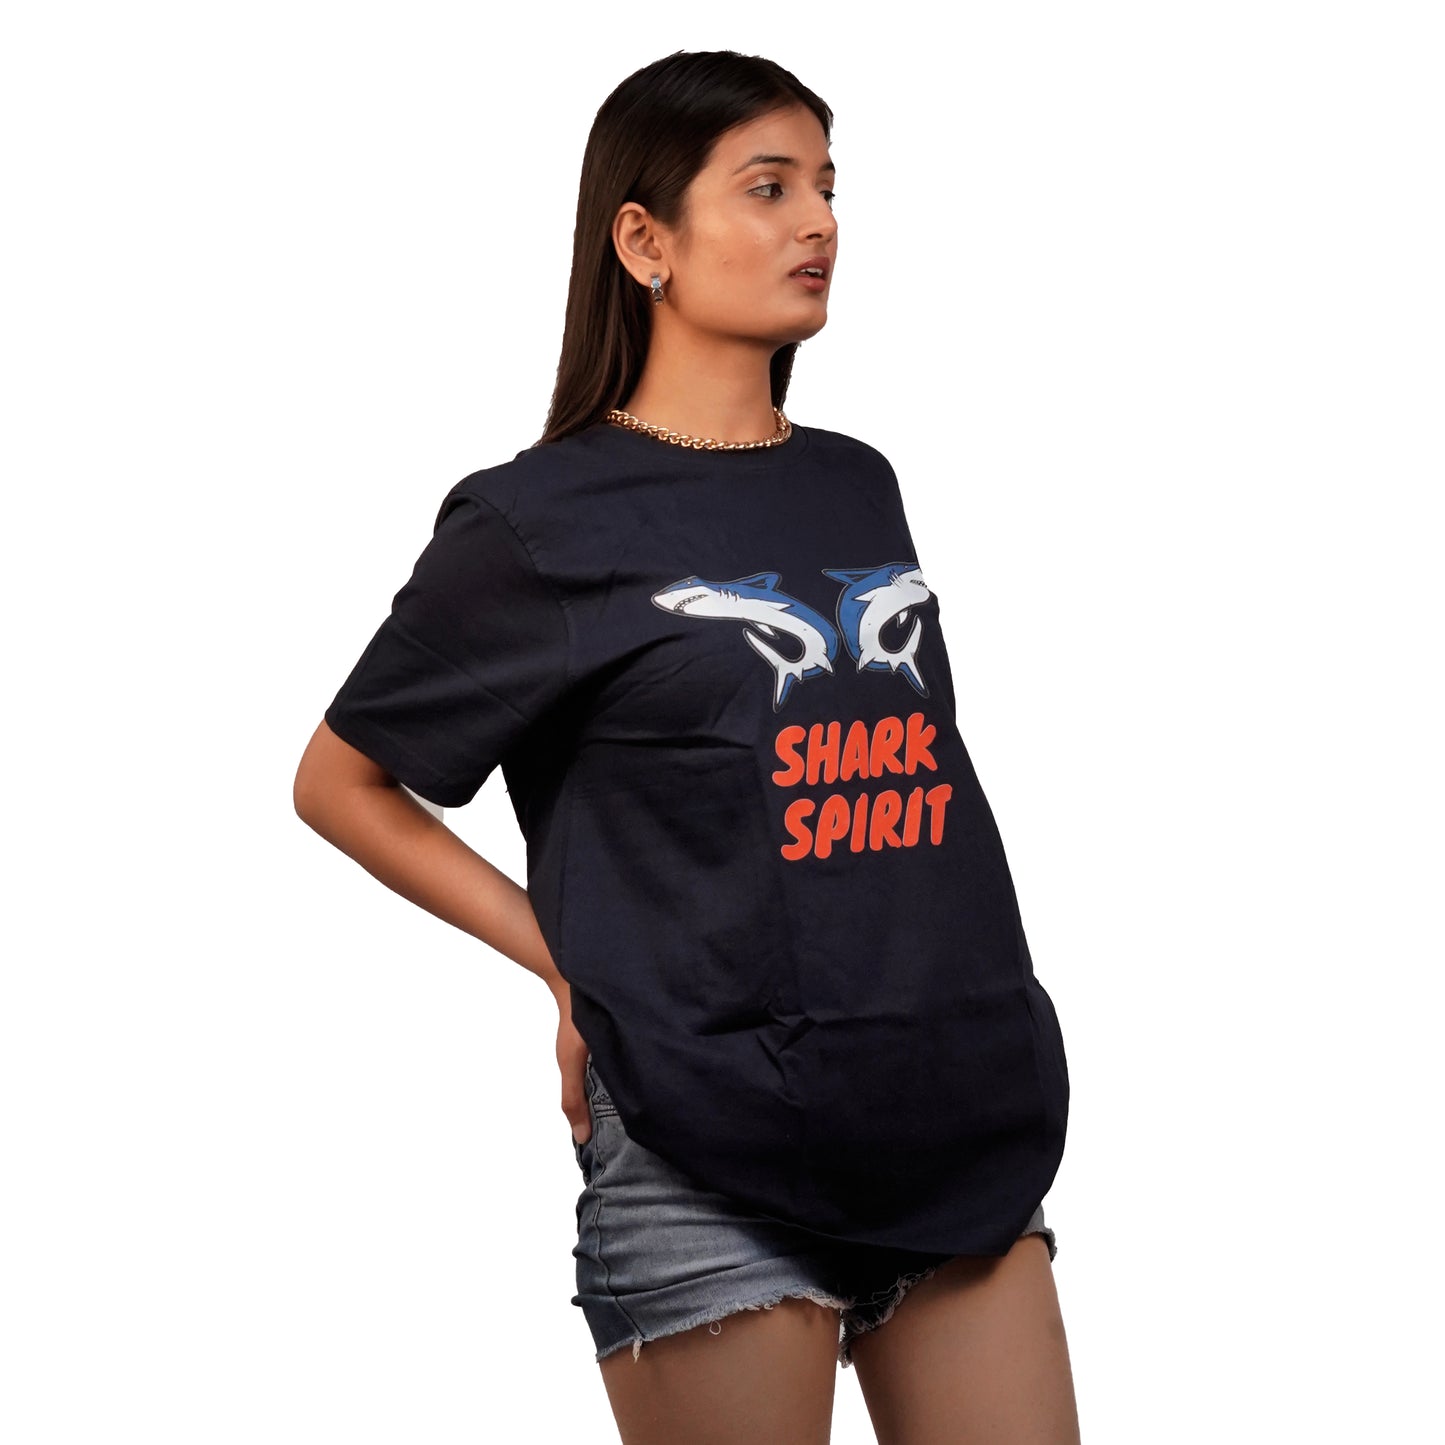 Shark Spirit T-Shirt In Navy Blue Color For Women